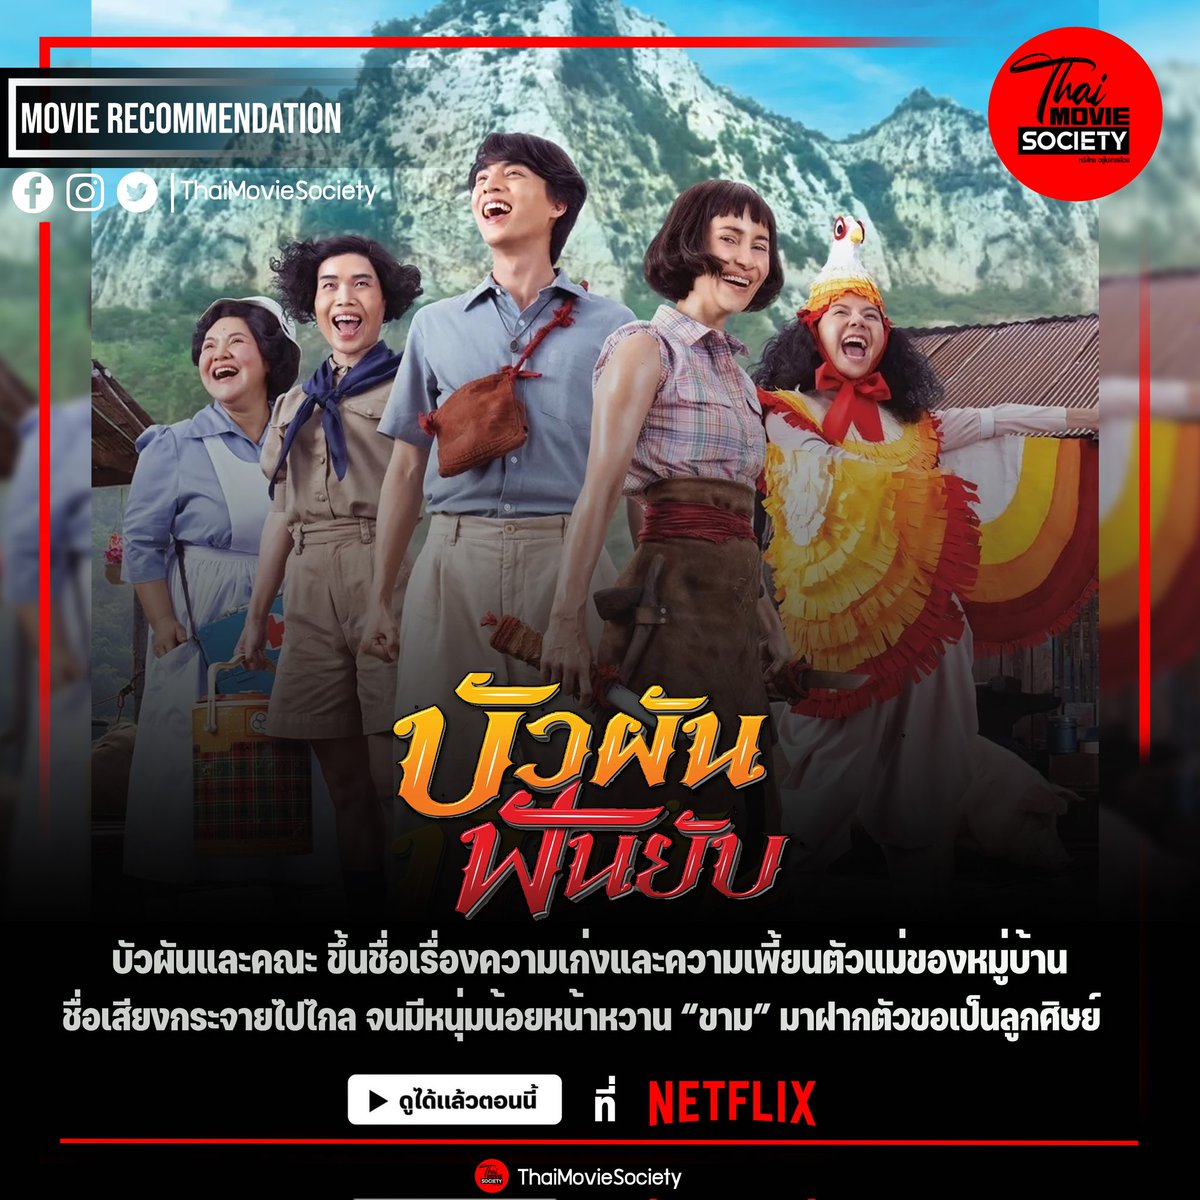 #บัวผันฟันยับ 

ตัวอย่าง : youtu.be/yS4dbuZdVfI

ดูได้แล้วตอนนี้ ที่ Netflix

#แอนทองประสม #กลัฟคณาวุฒิ #thaimovie #thaimoviesociety #รฤกโปรดั๊กชั่น #หนังไทยอยู่ในสายเลือด #รฤกโปรดั๊กชั่น #GulfKanawut #ลูกบอลของคุณบิ๊กกลัฟ #PhiBalls